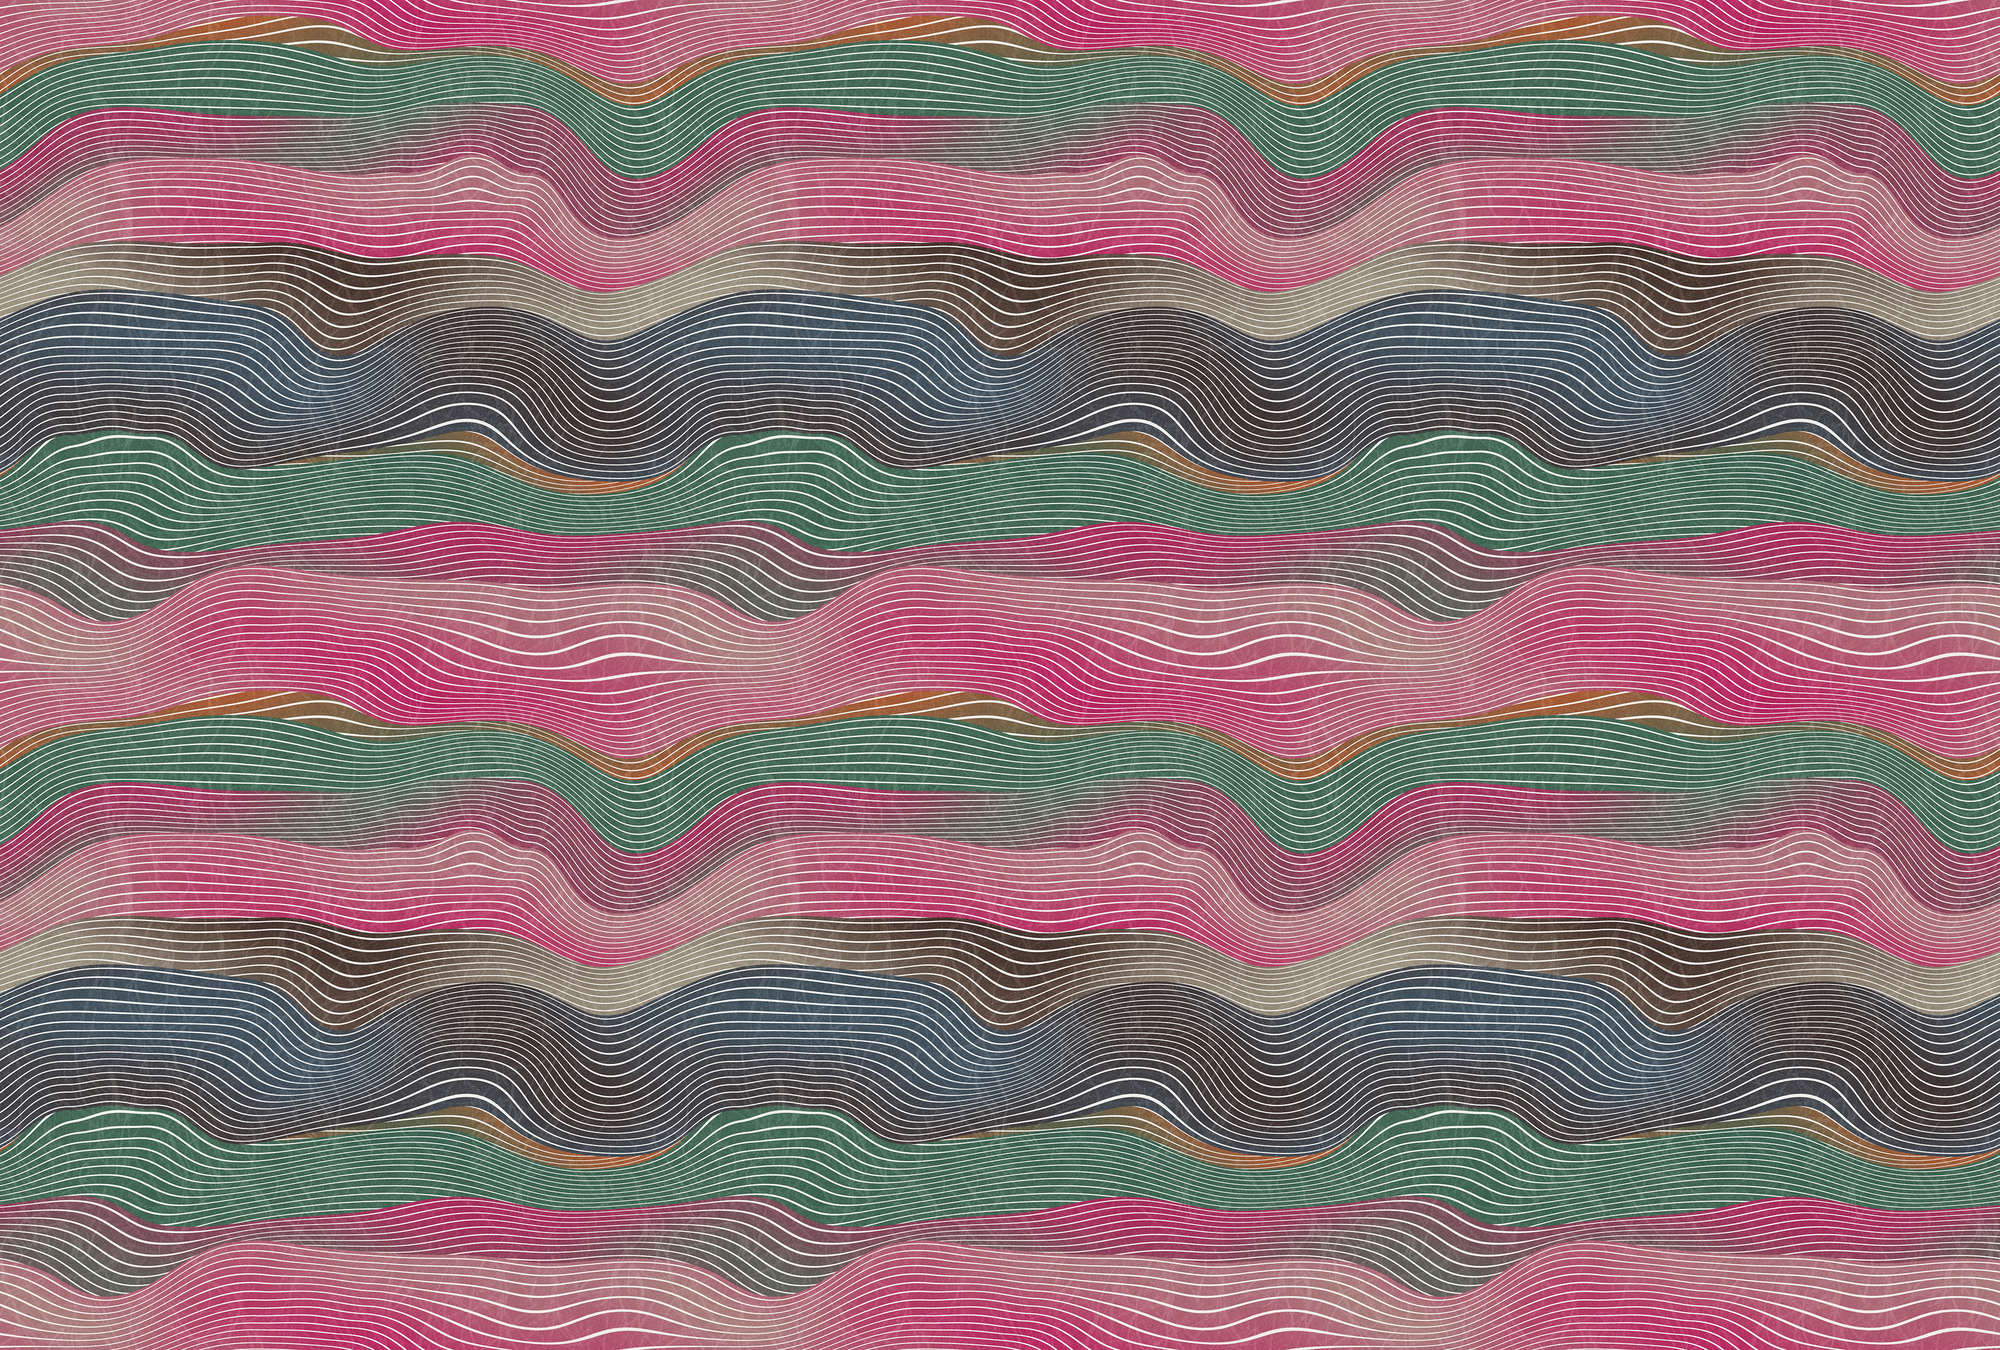             Space 1 - Papier peint vague motif rose & vert style rétro
        